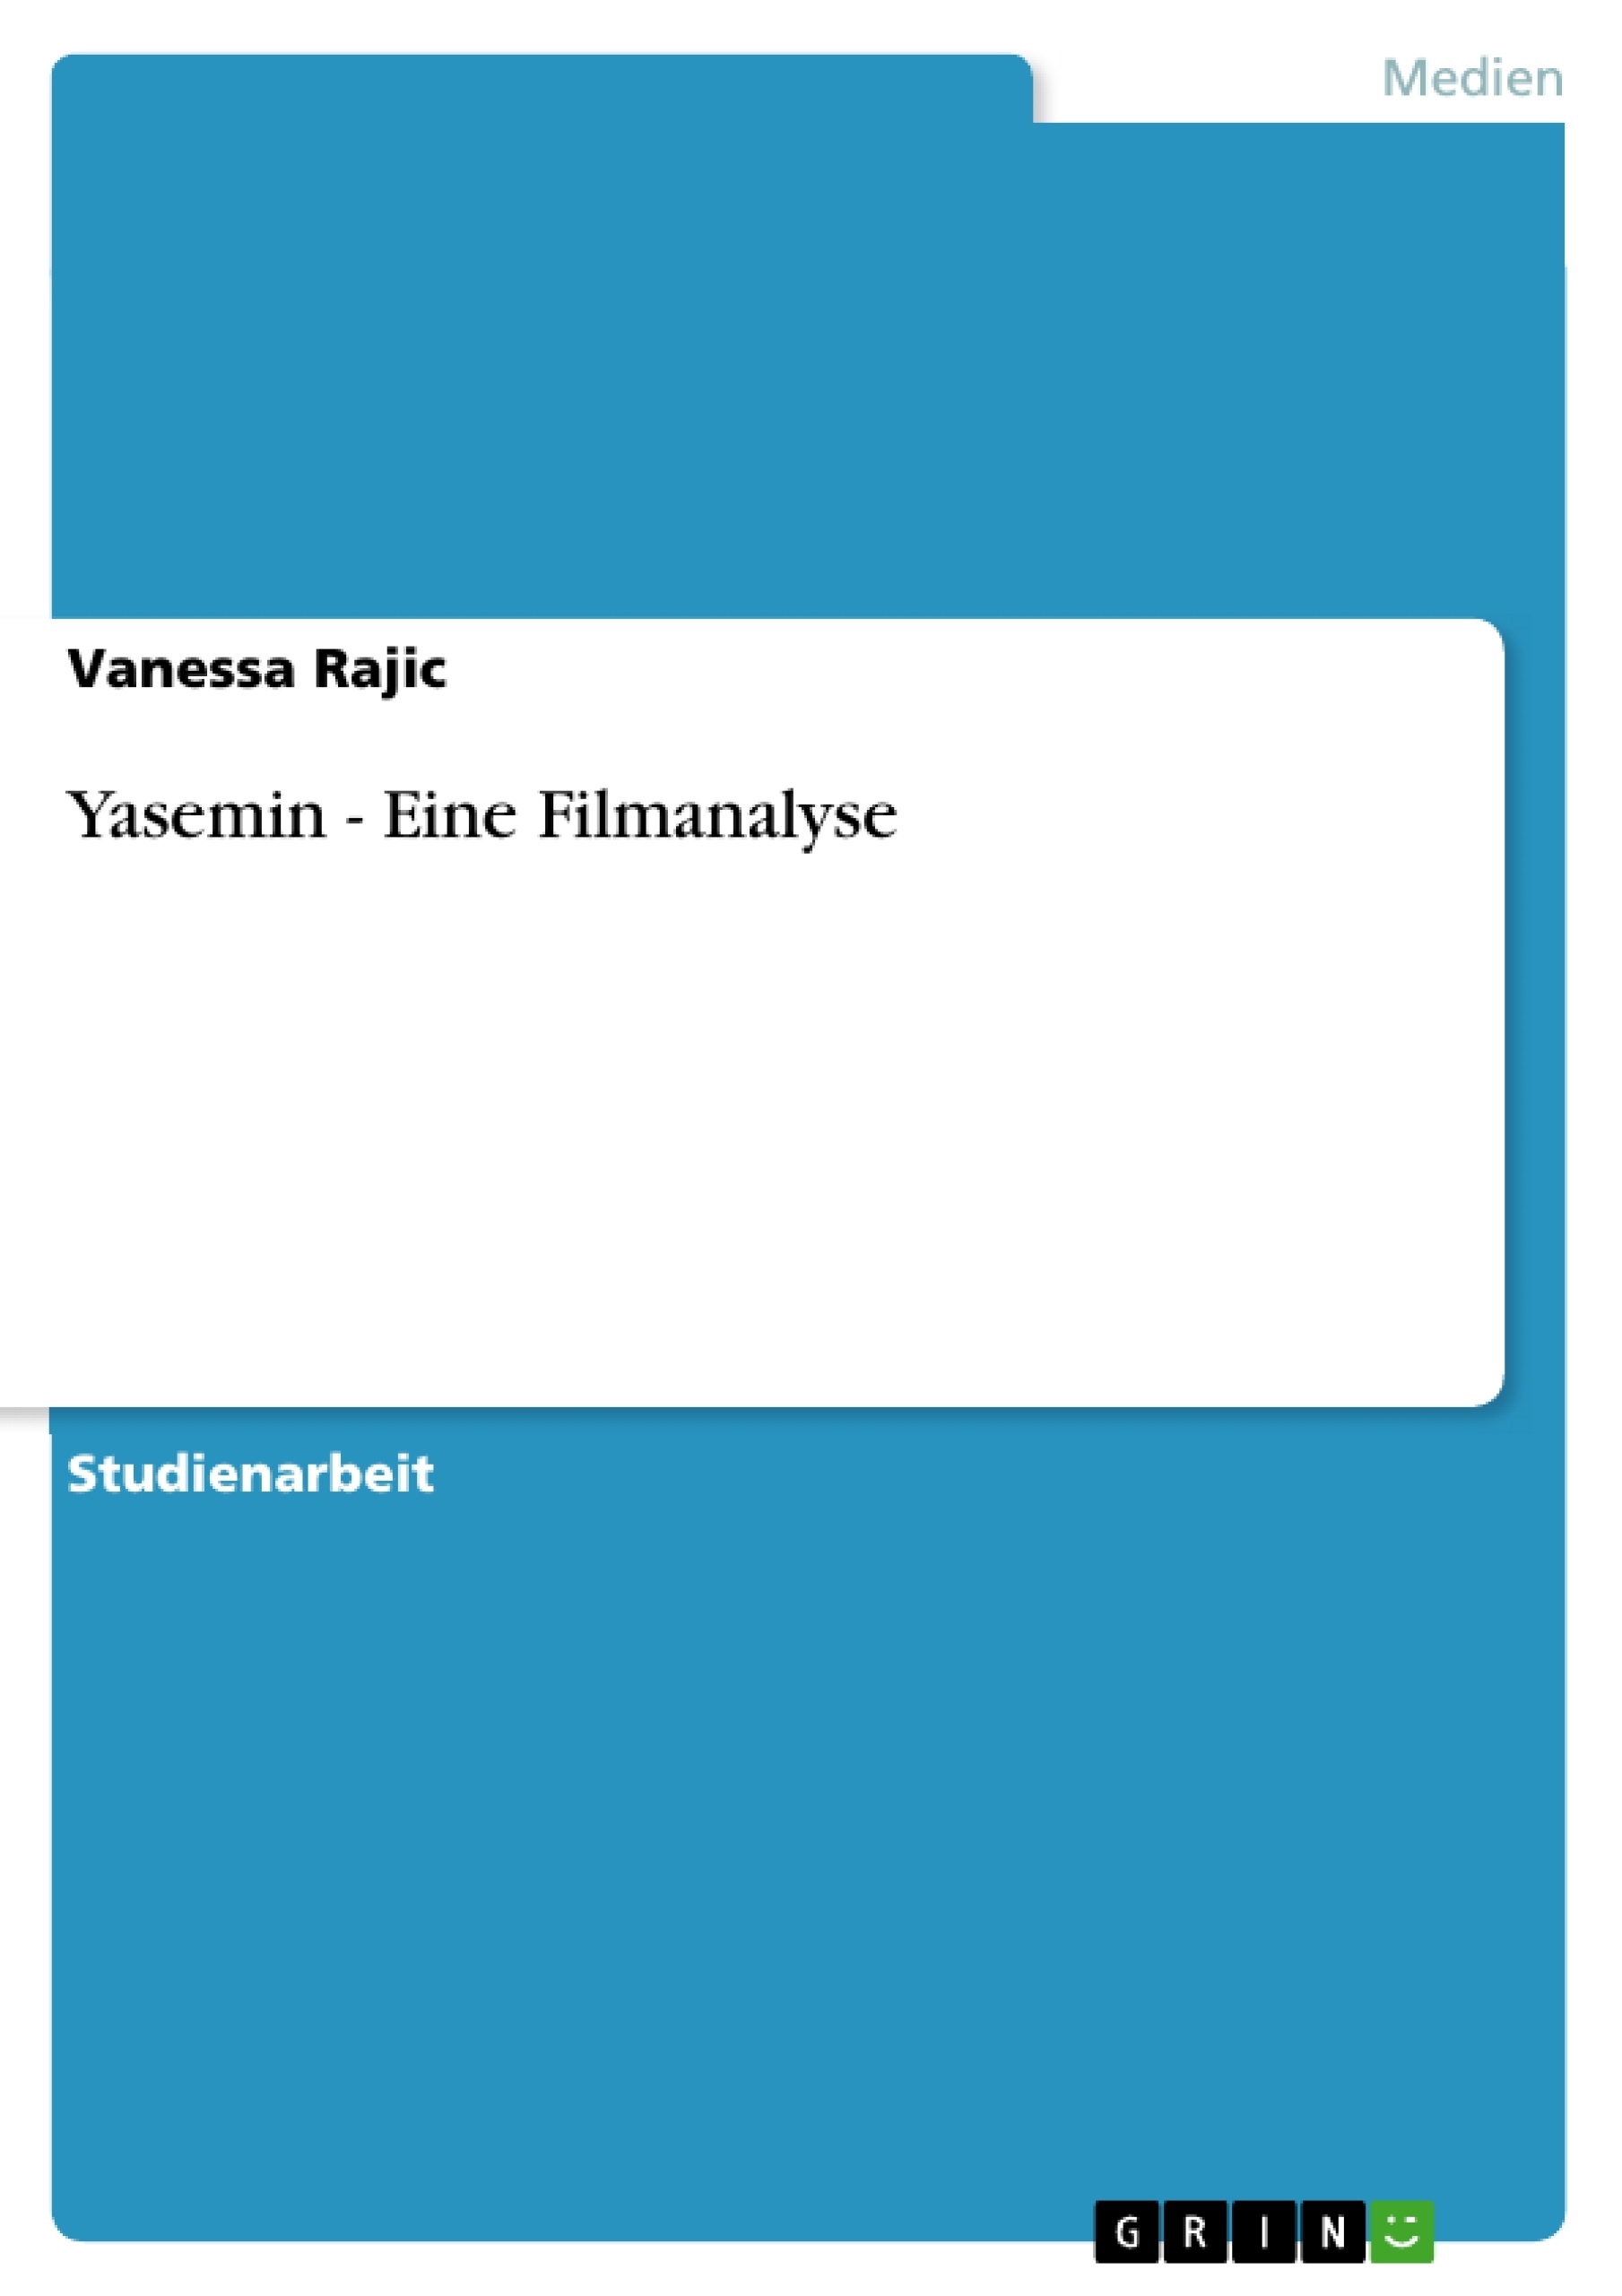 Título: Yasemin - Eine Filmanalyse